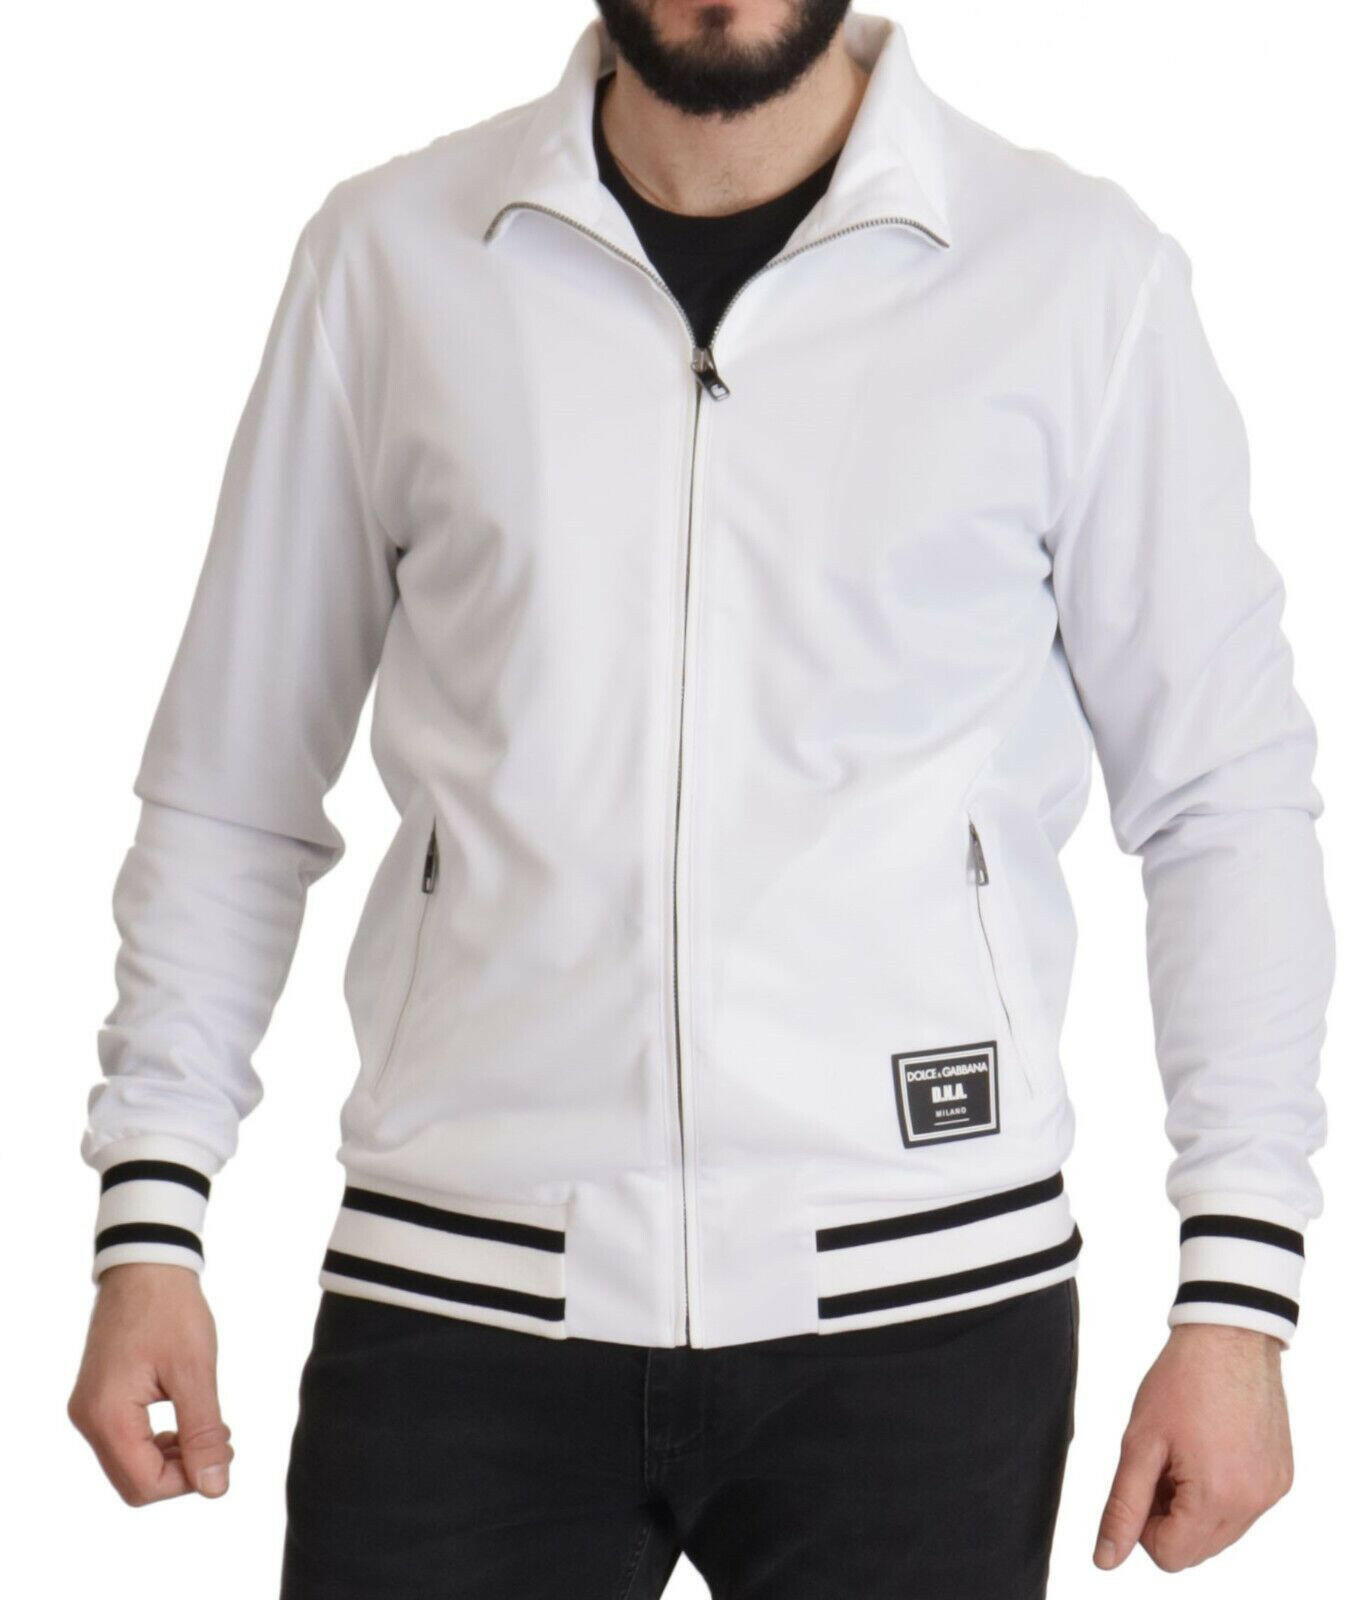 Dolce & Gabbana White DG D.N.A. Zipper Stretch Sweater - GENUINE AUTHENTIC BRAND LLC  